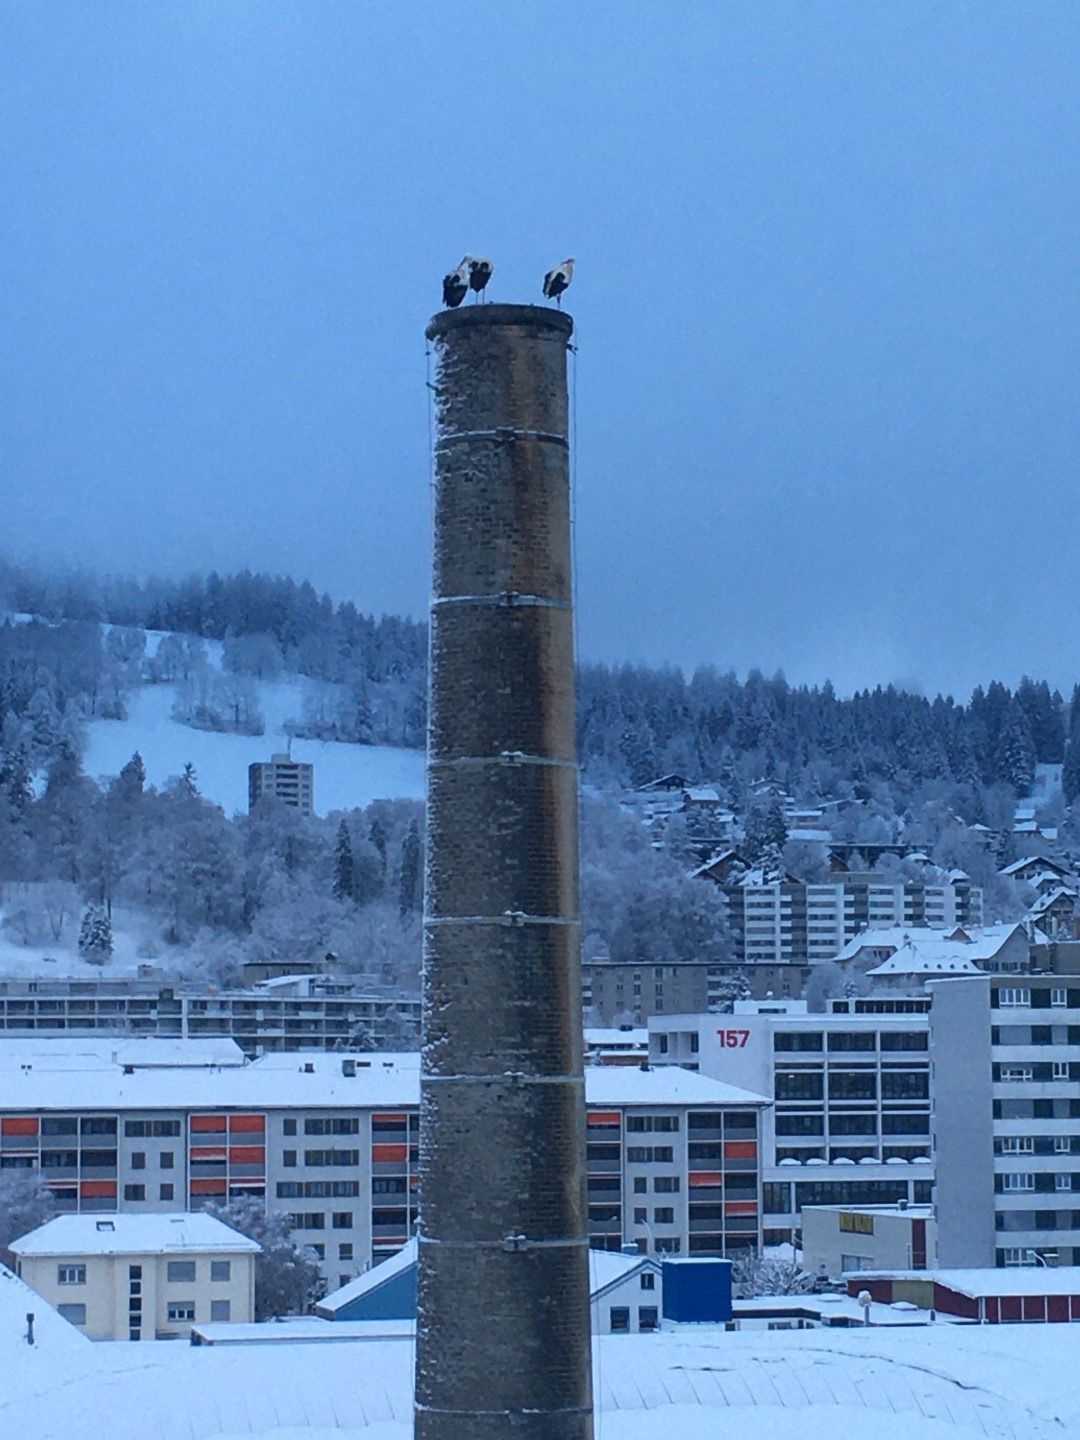 Nicolas Déhon nous a fait parvenir un cliché montrant trois cigognes sur la cheminée des anciens abattoirs à La Chaux-de-Fonds ce mercredi 5 février.